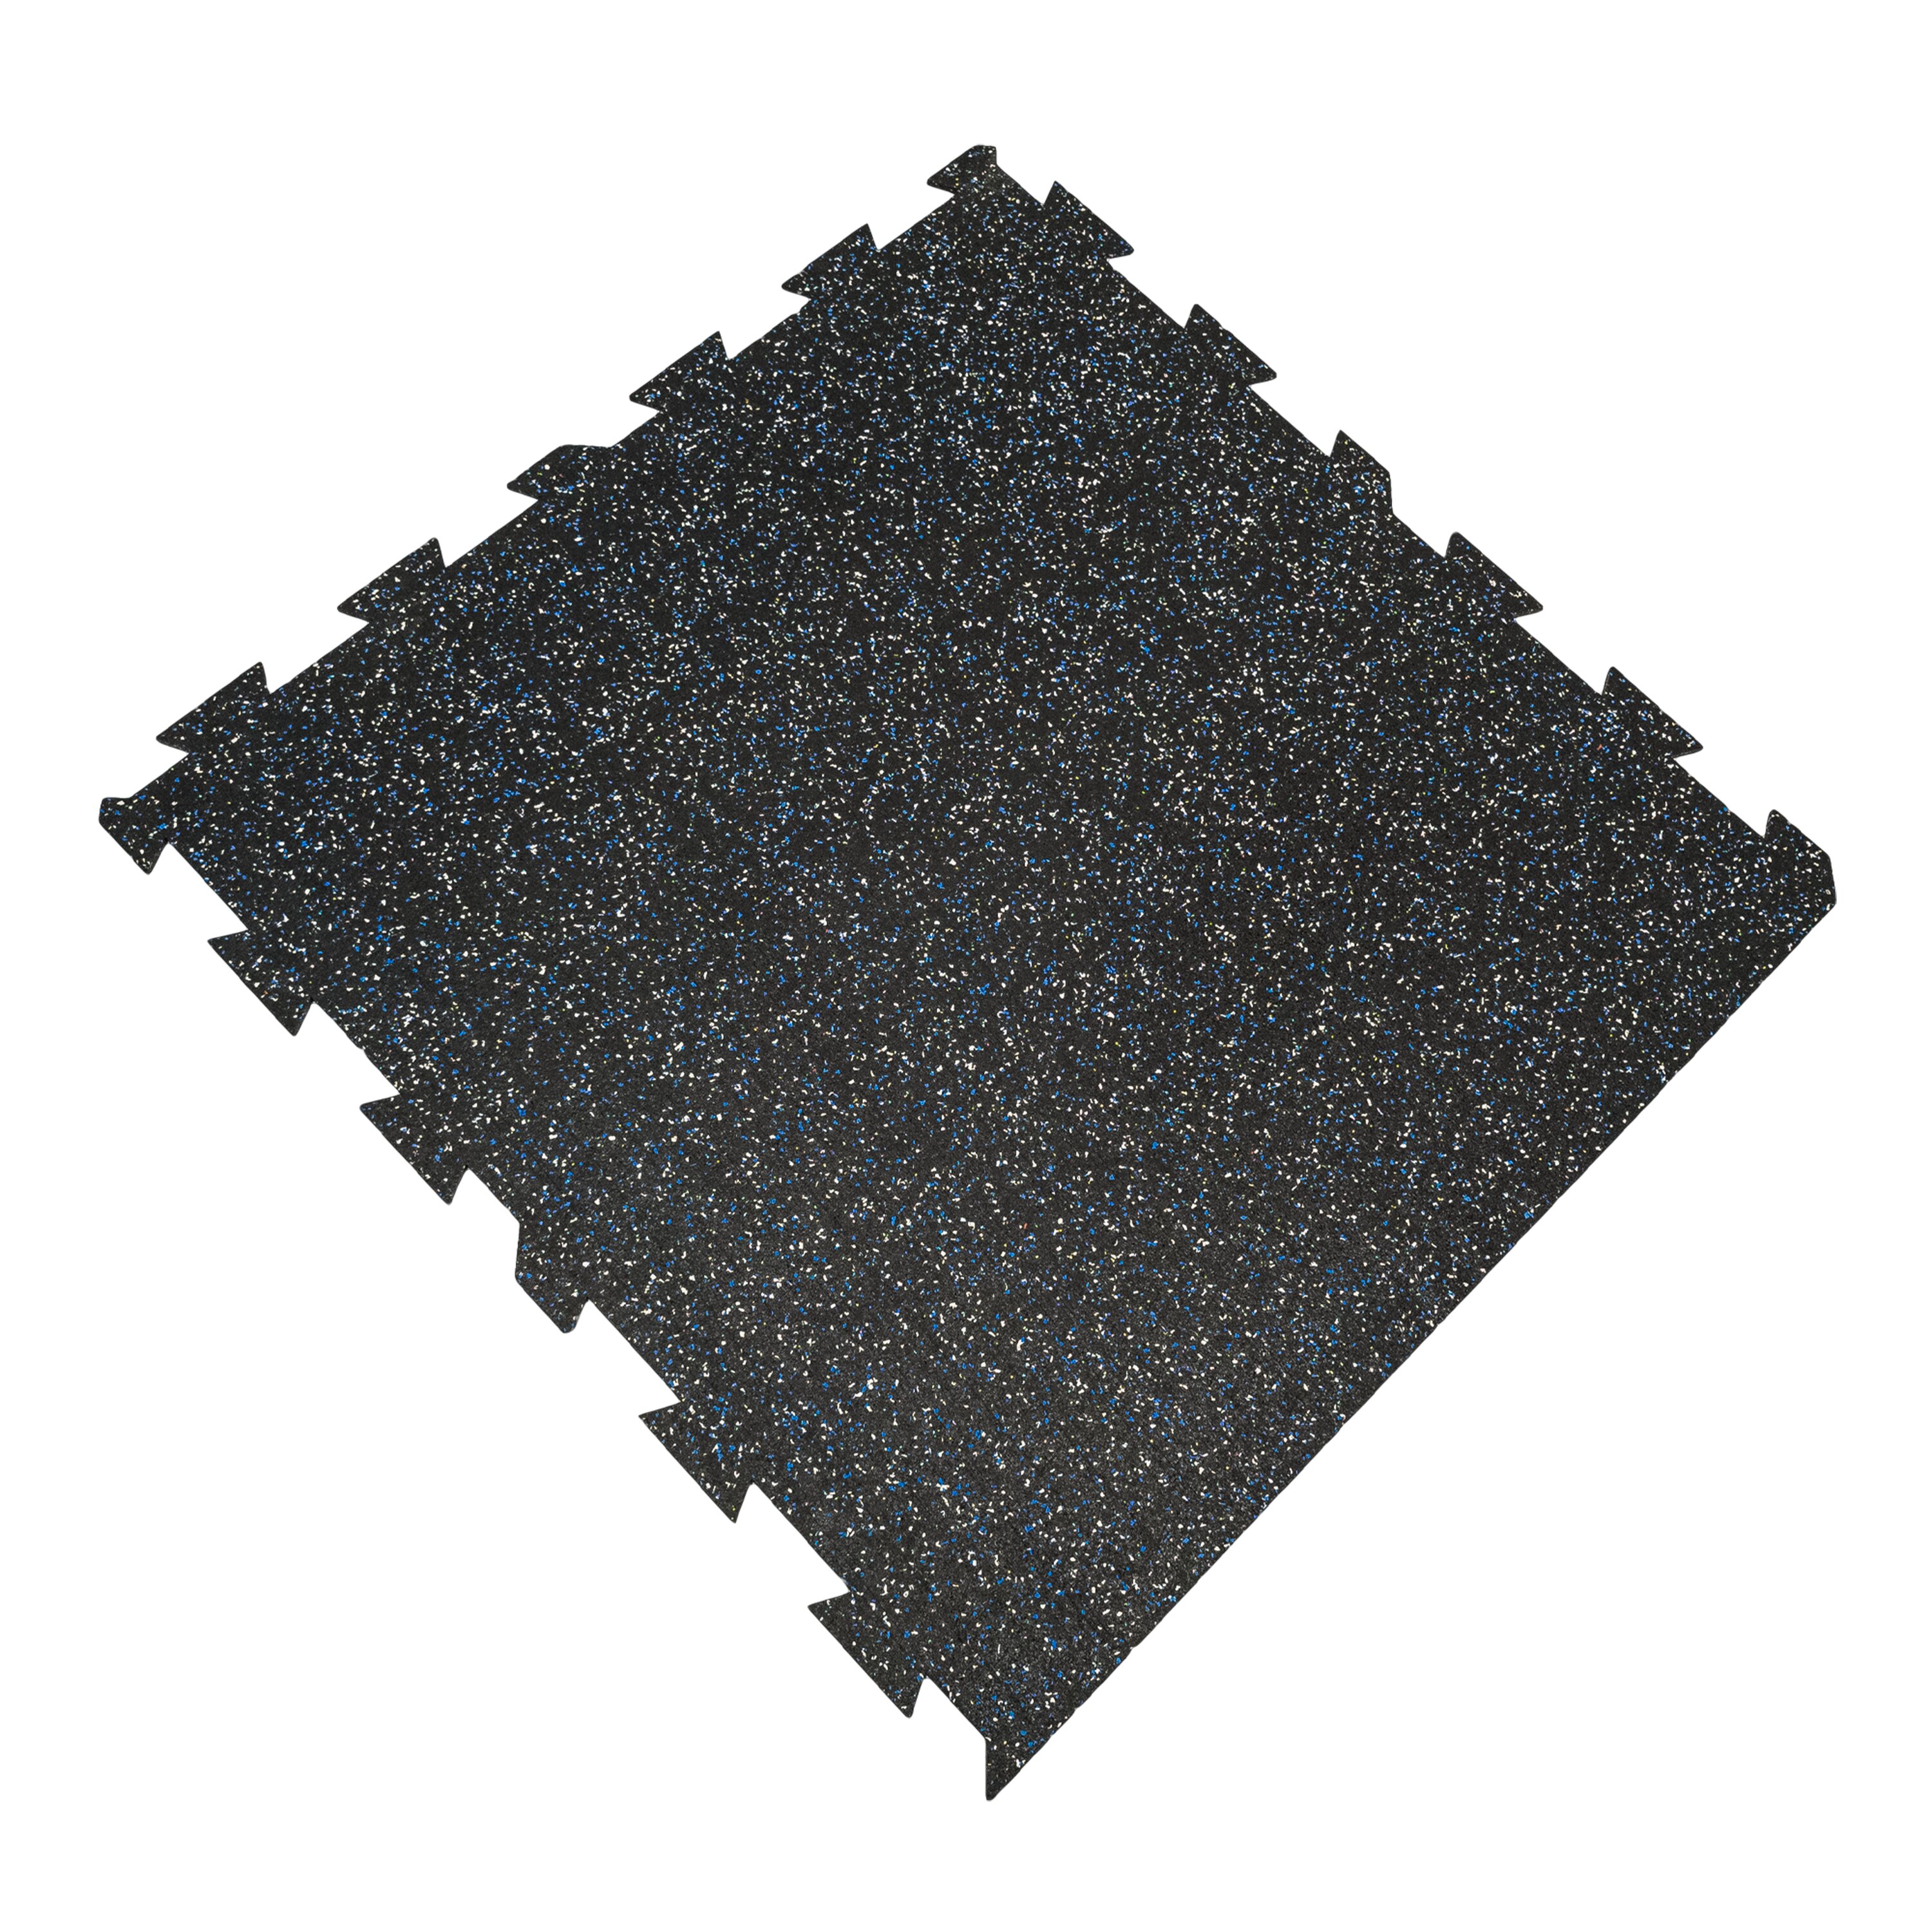 Černo-bílo-modrá gumová puzzle modulová dlažba FLOMA SF1050 FitFlo - délka 100 cm, šířka 100 cm, výška 1,6 cm